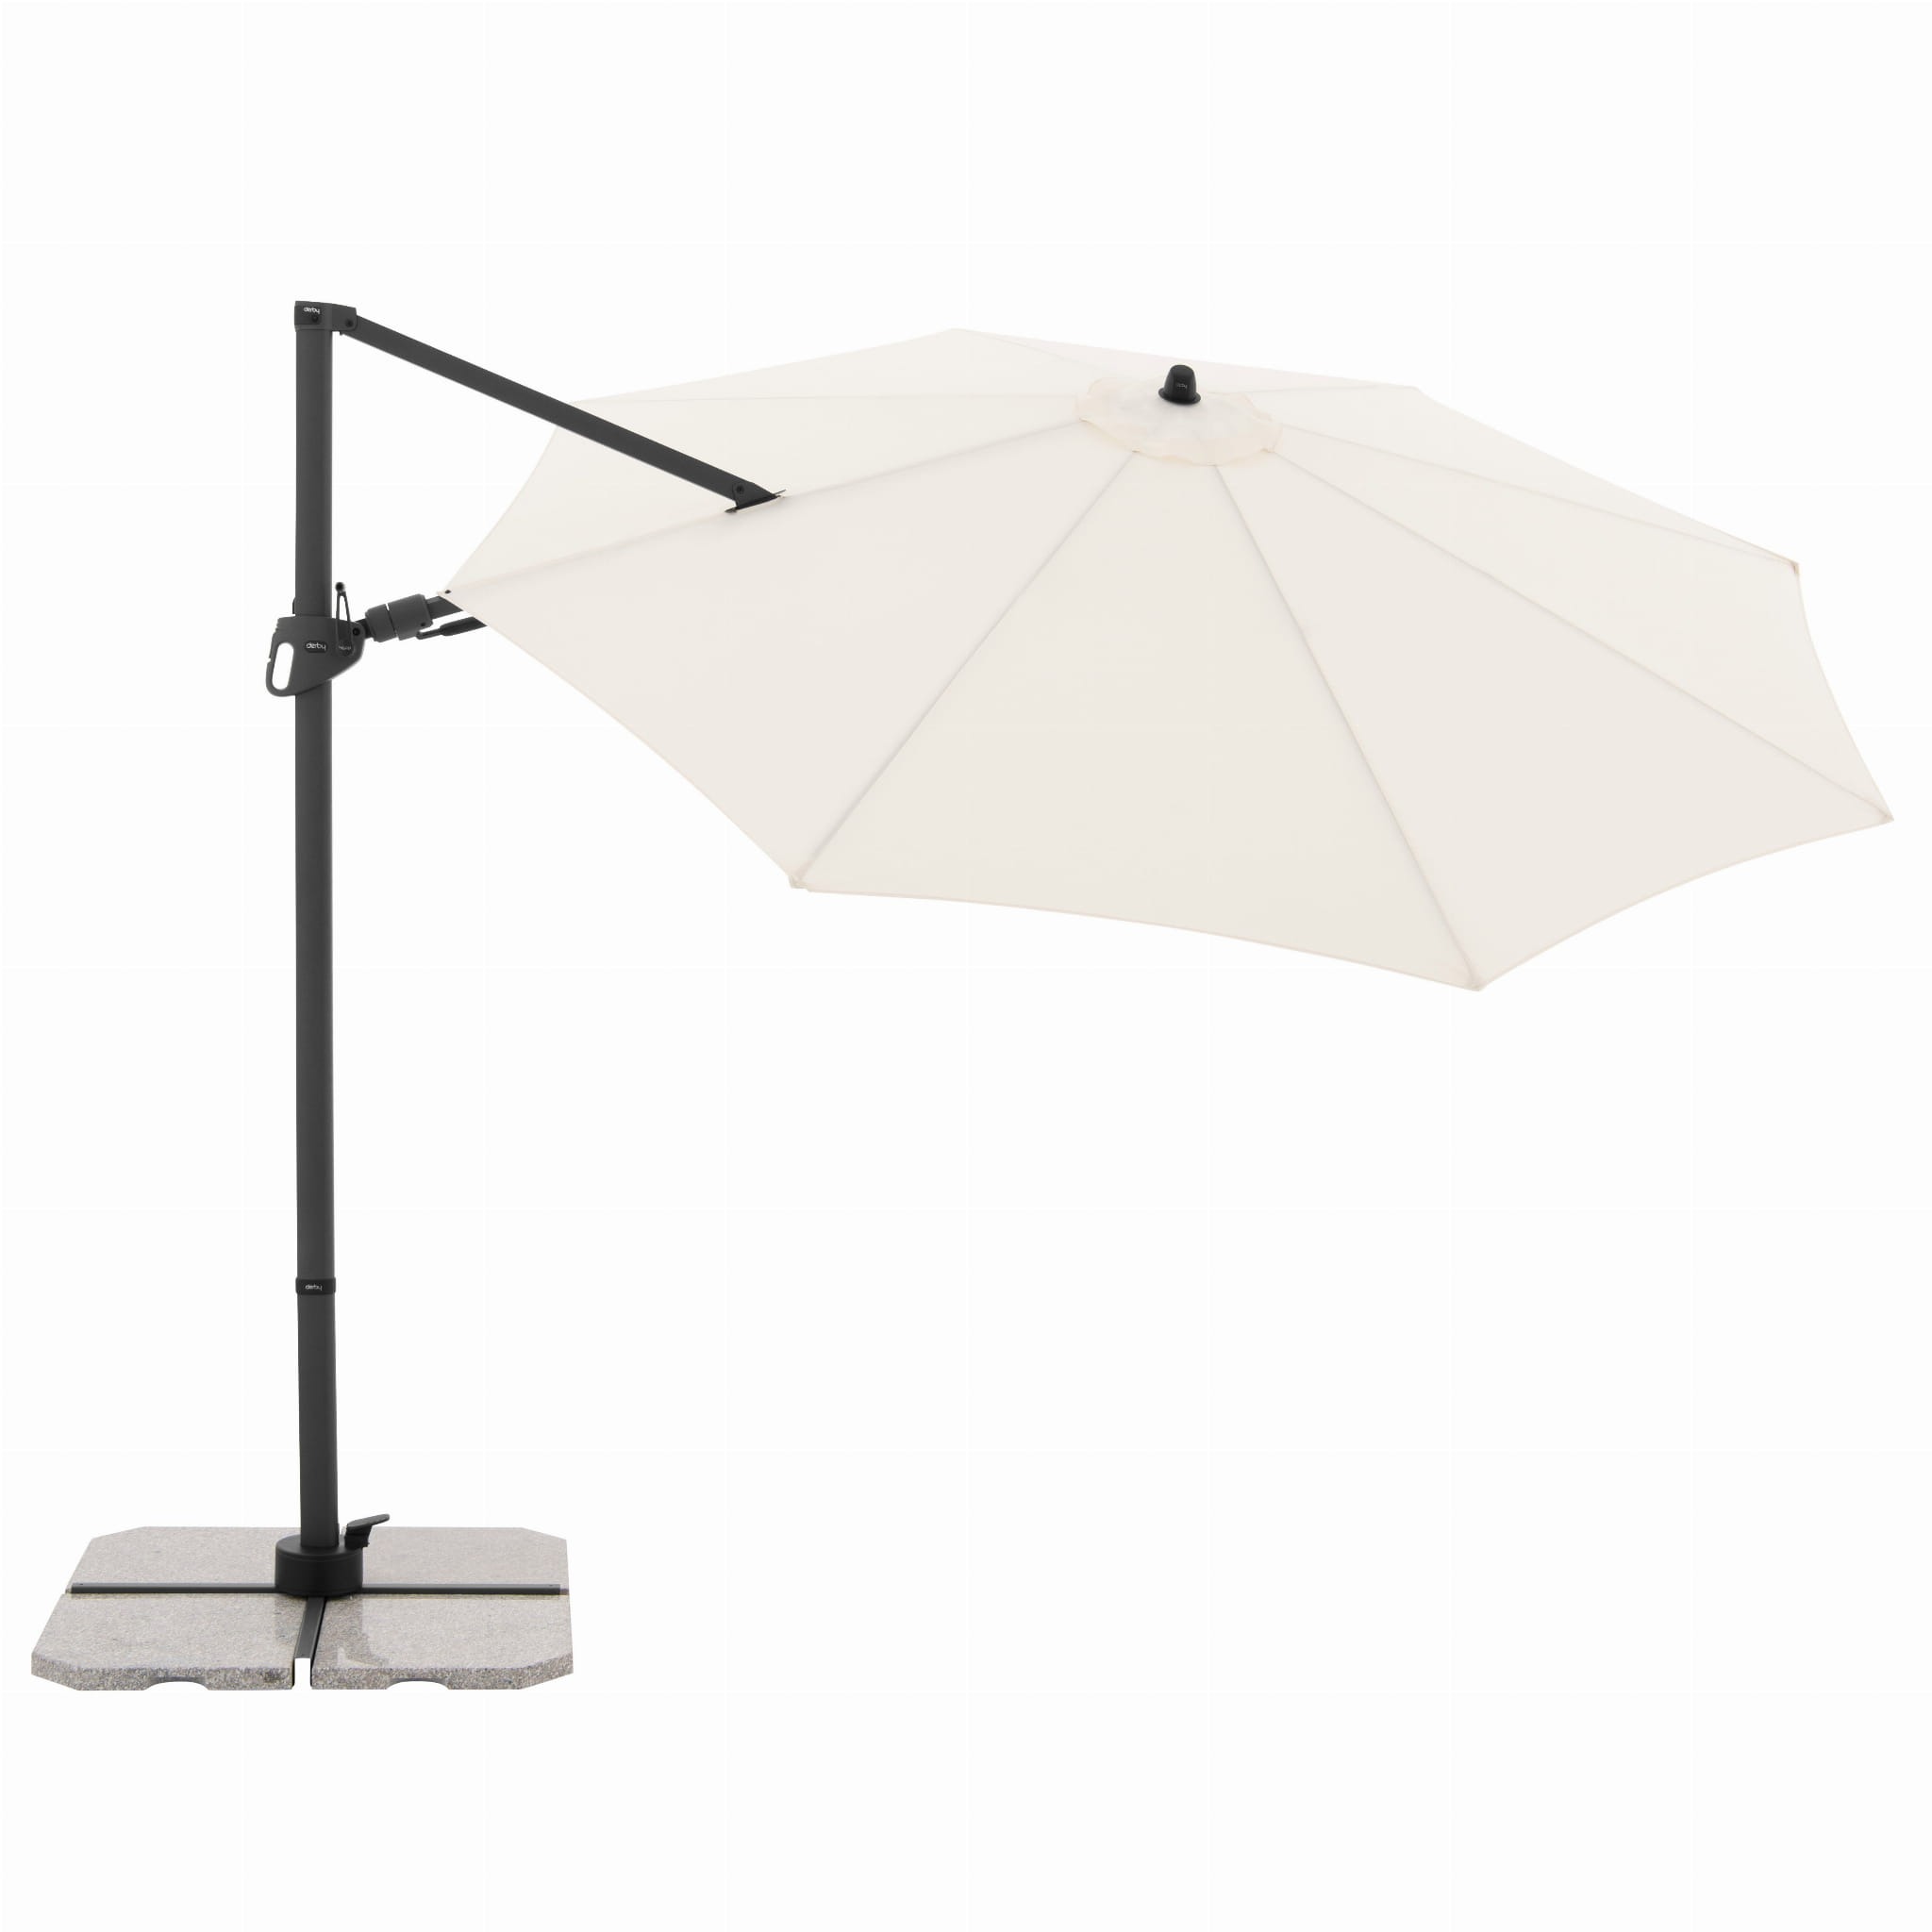 Зонт садовый Doppler Derby DX бежевый 335 см без подставки садовый зонт monaco grey